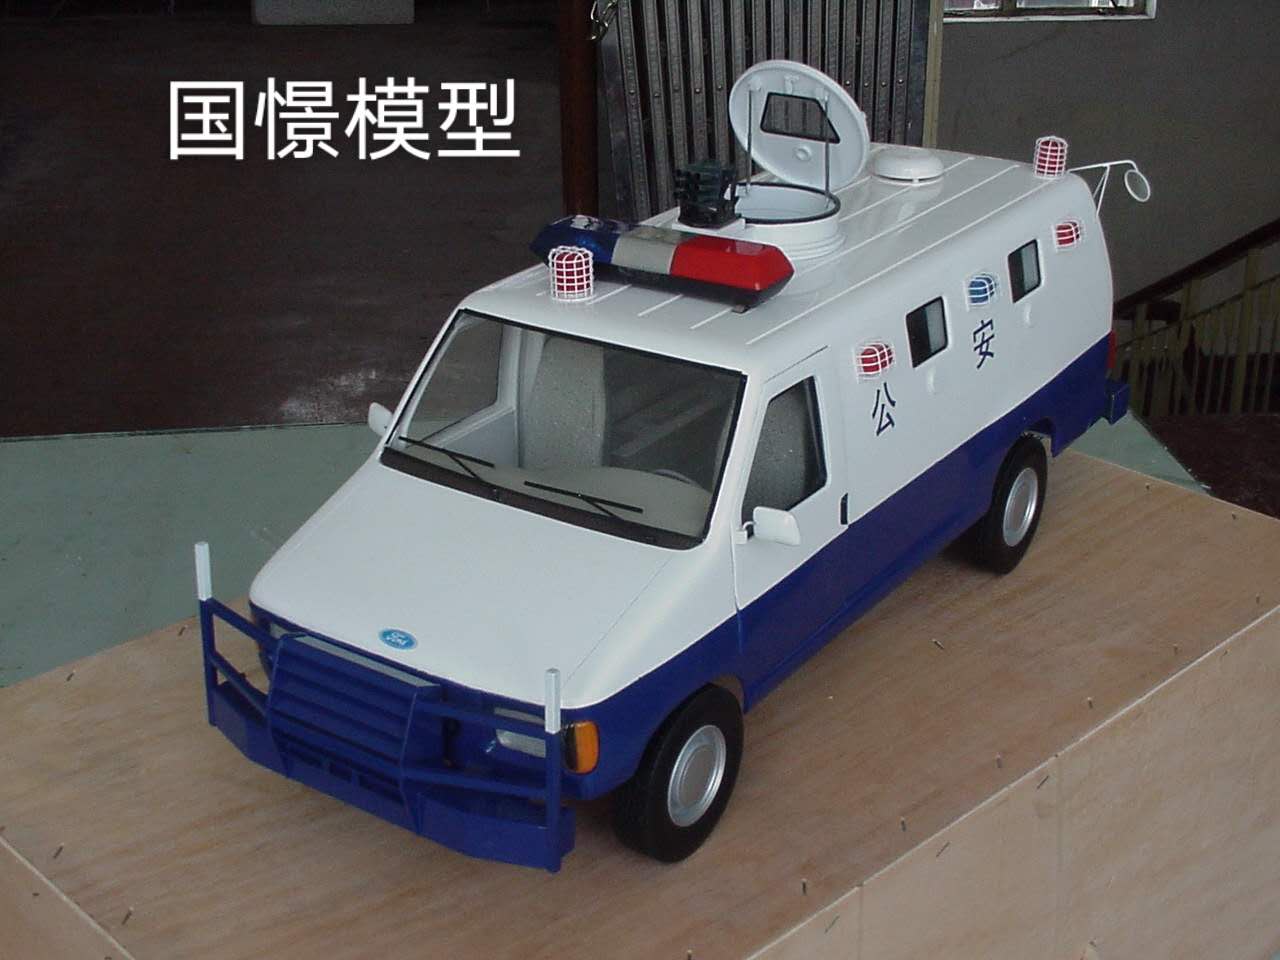 中宁县车辆模型